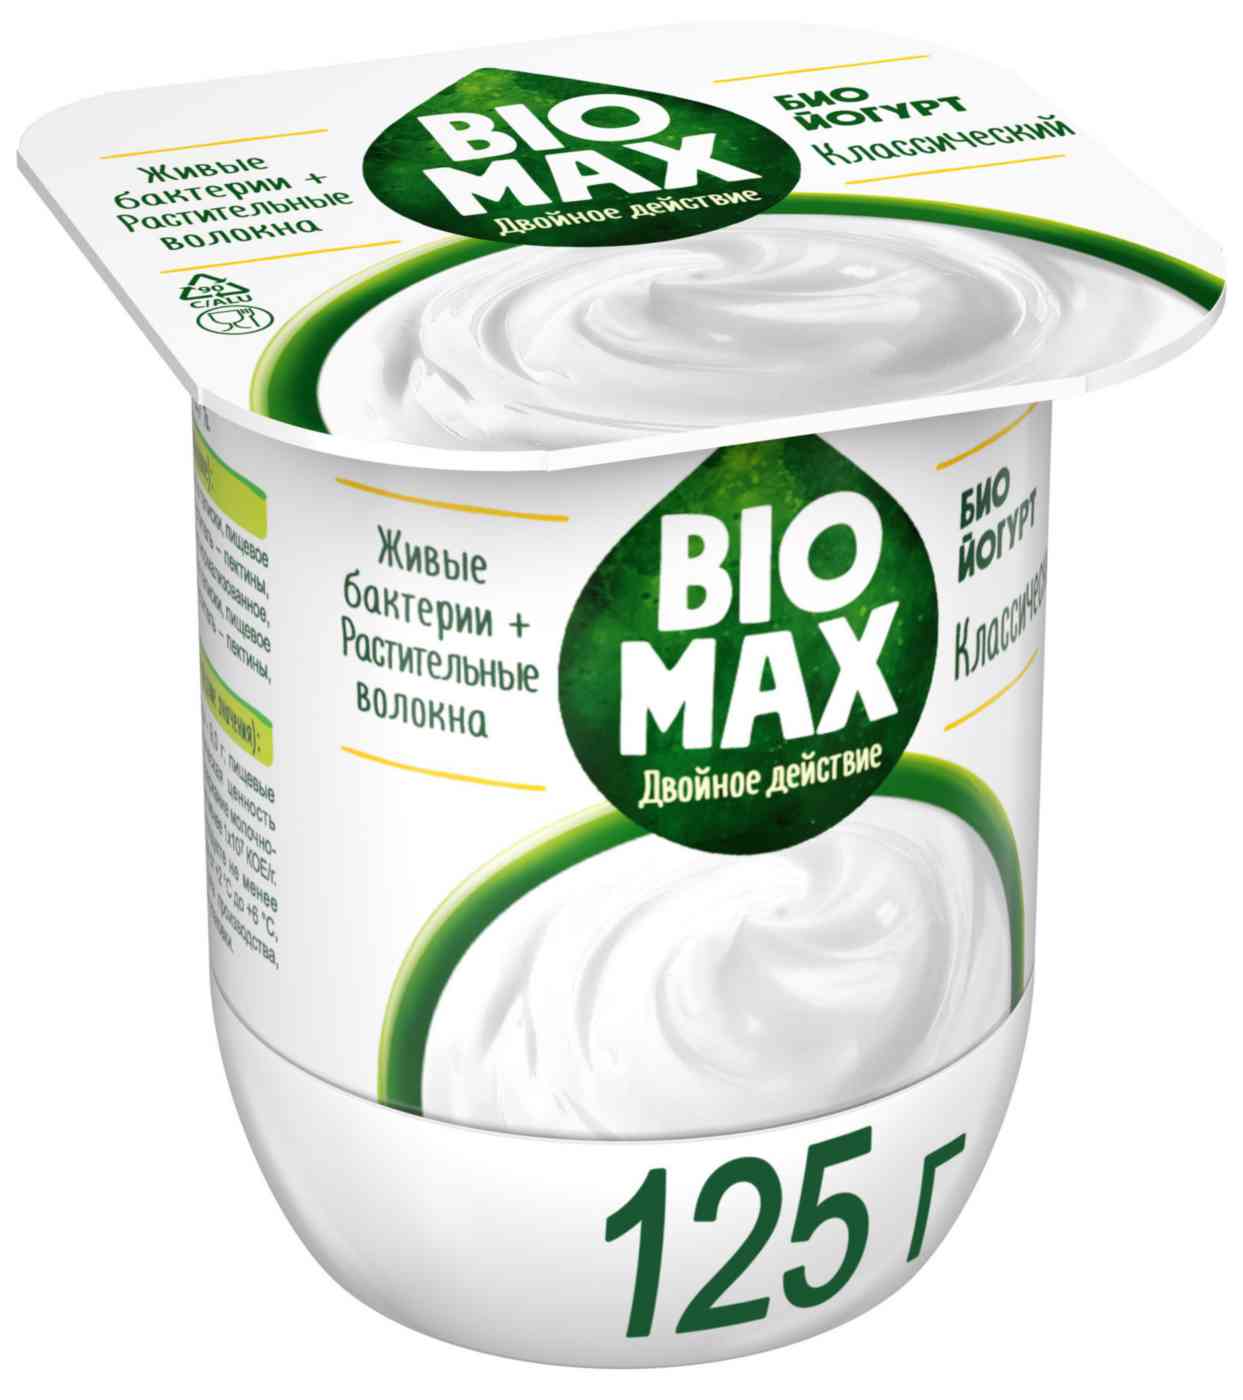 Биойогурт BioMax Двойное действие Классический 2,7%, 125 г